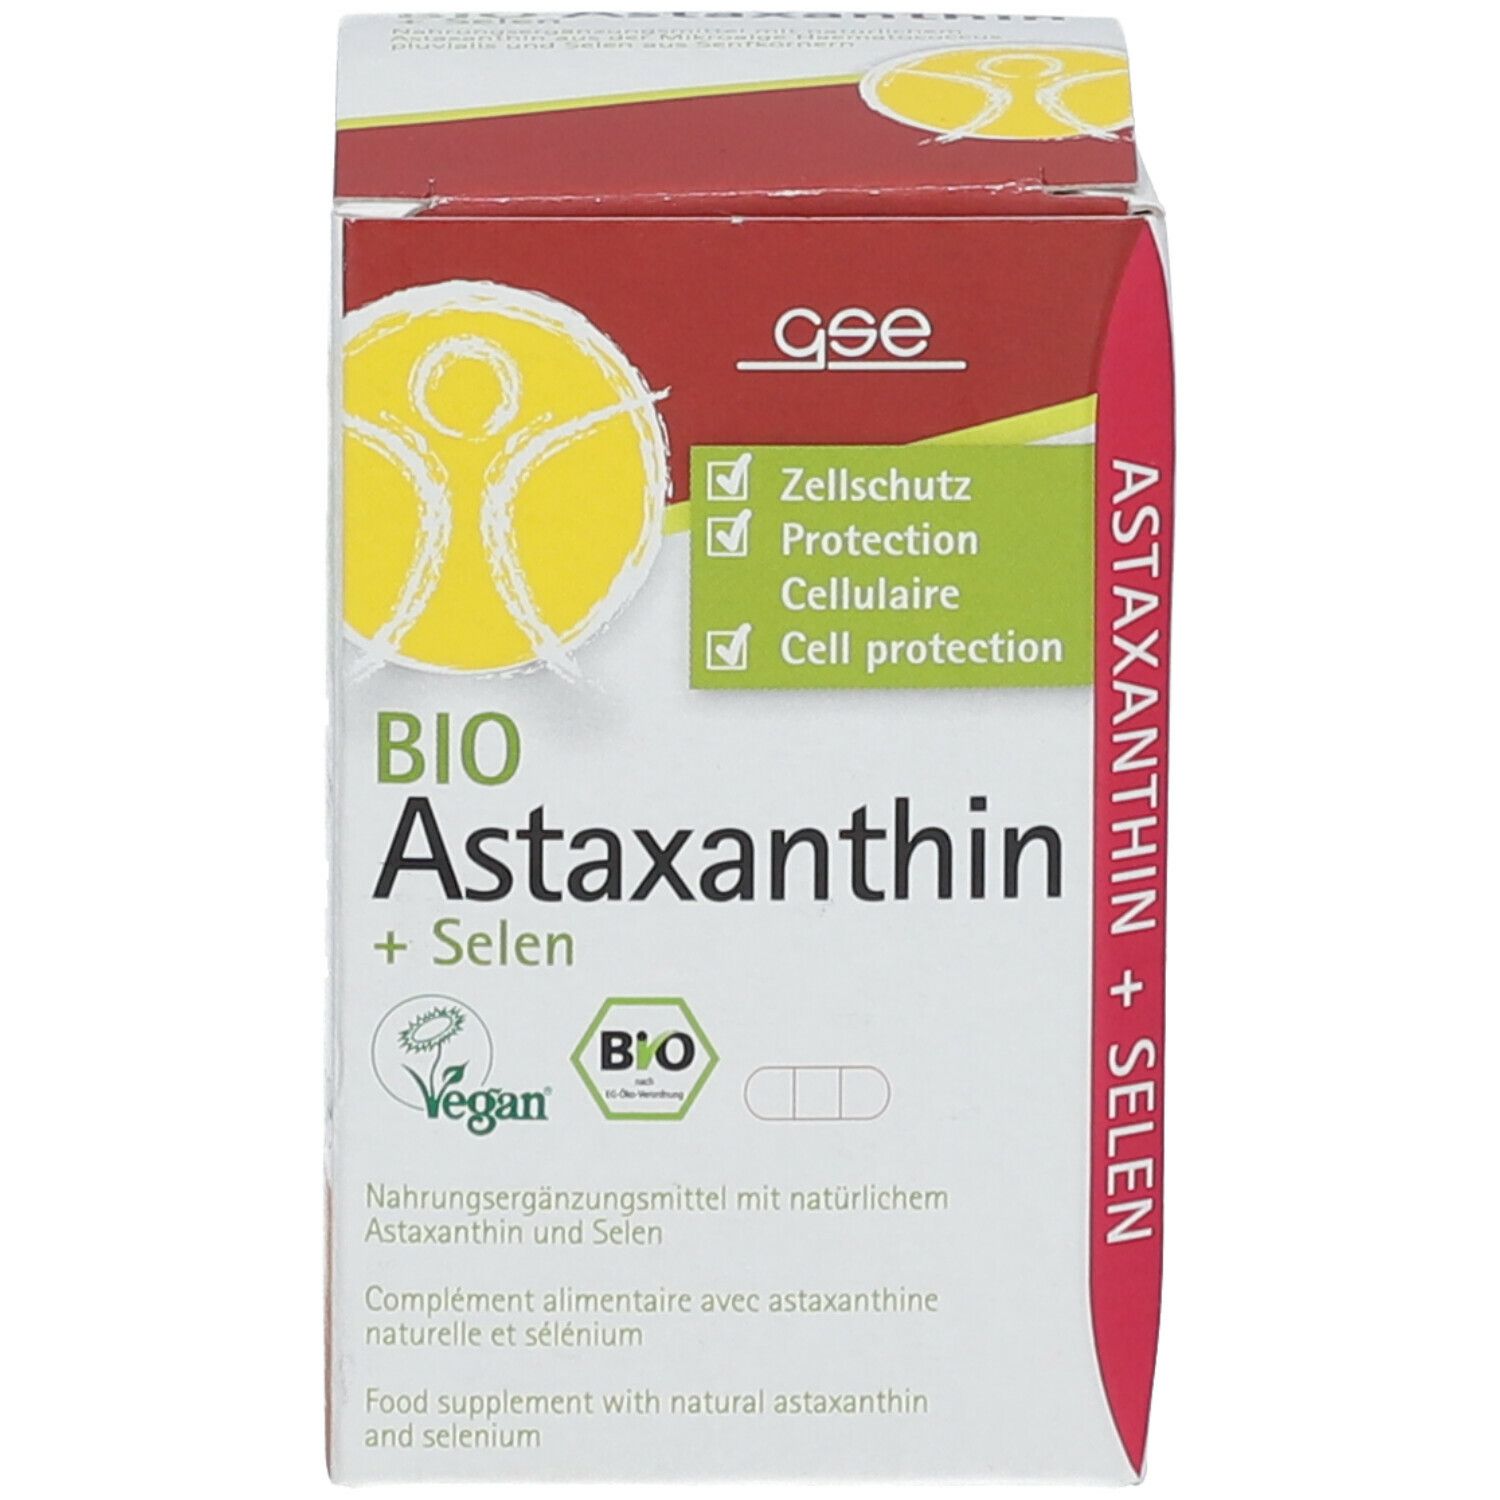 GSE Bio Astaxanthine + Selenium